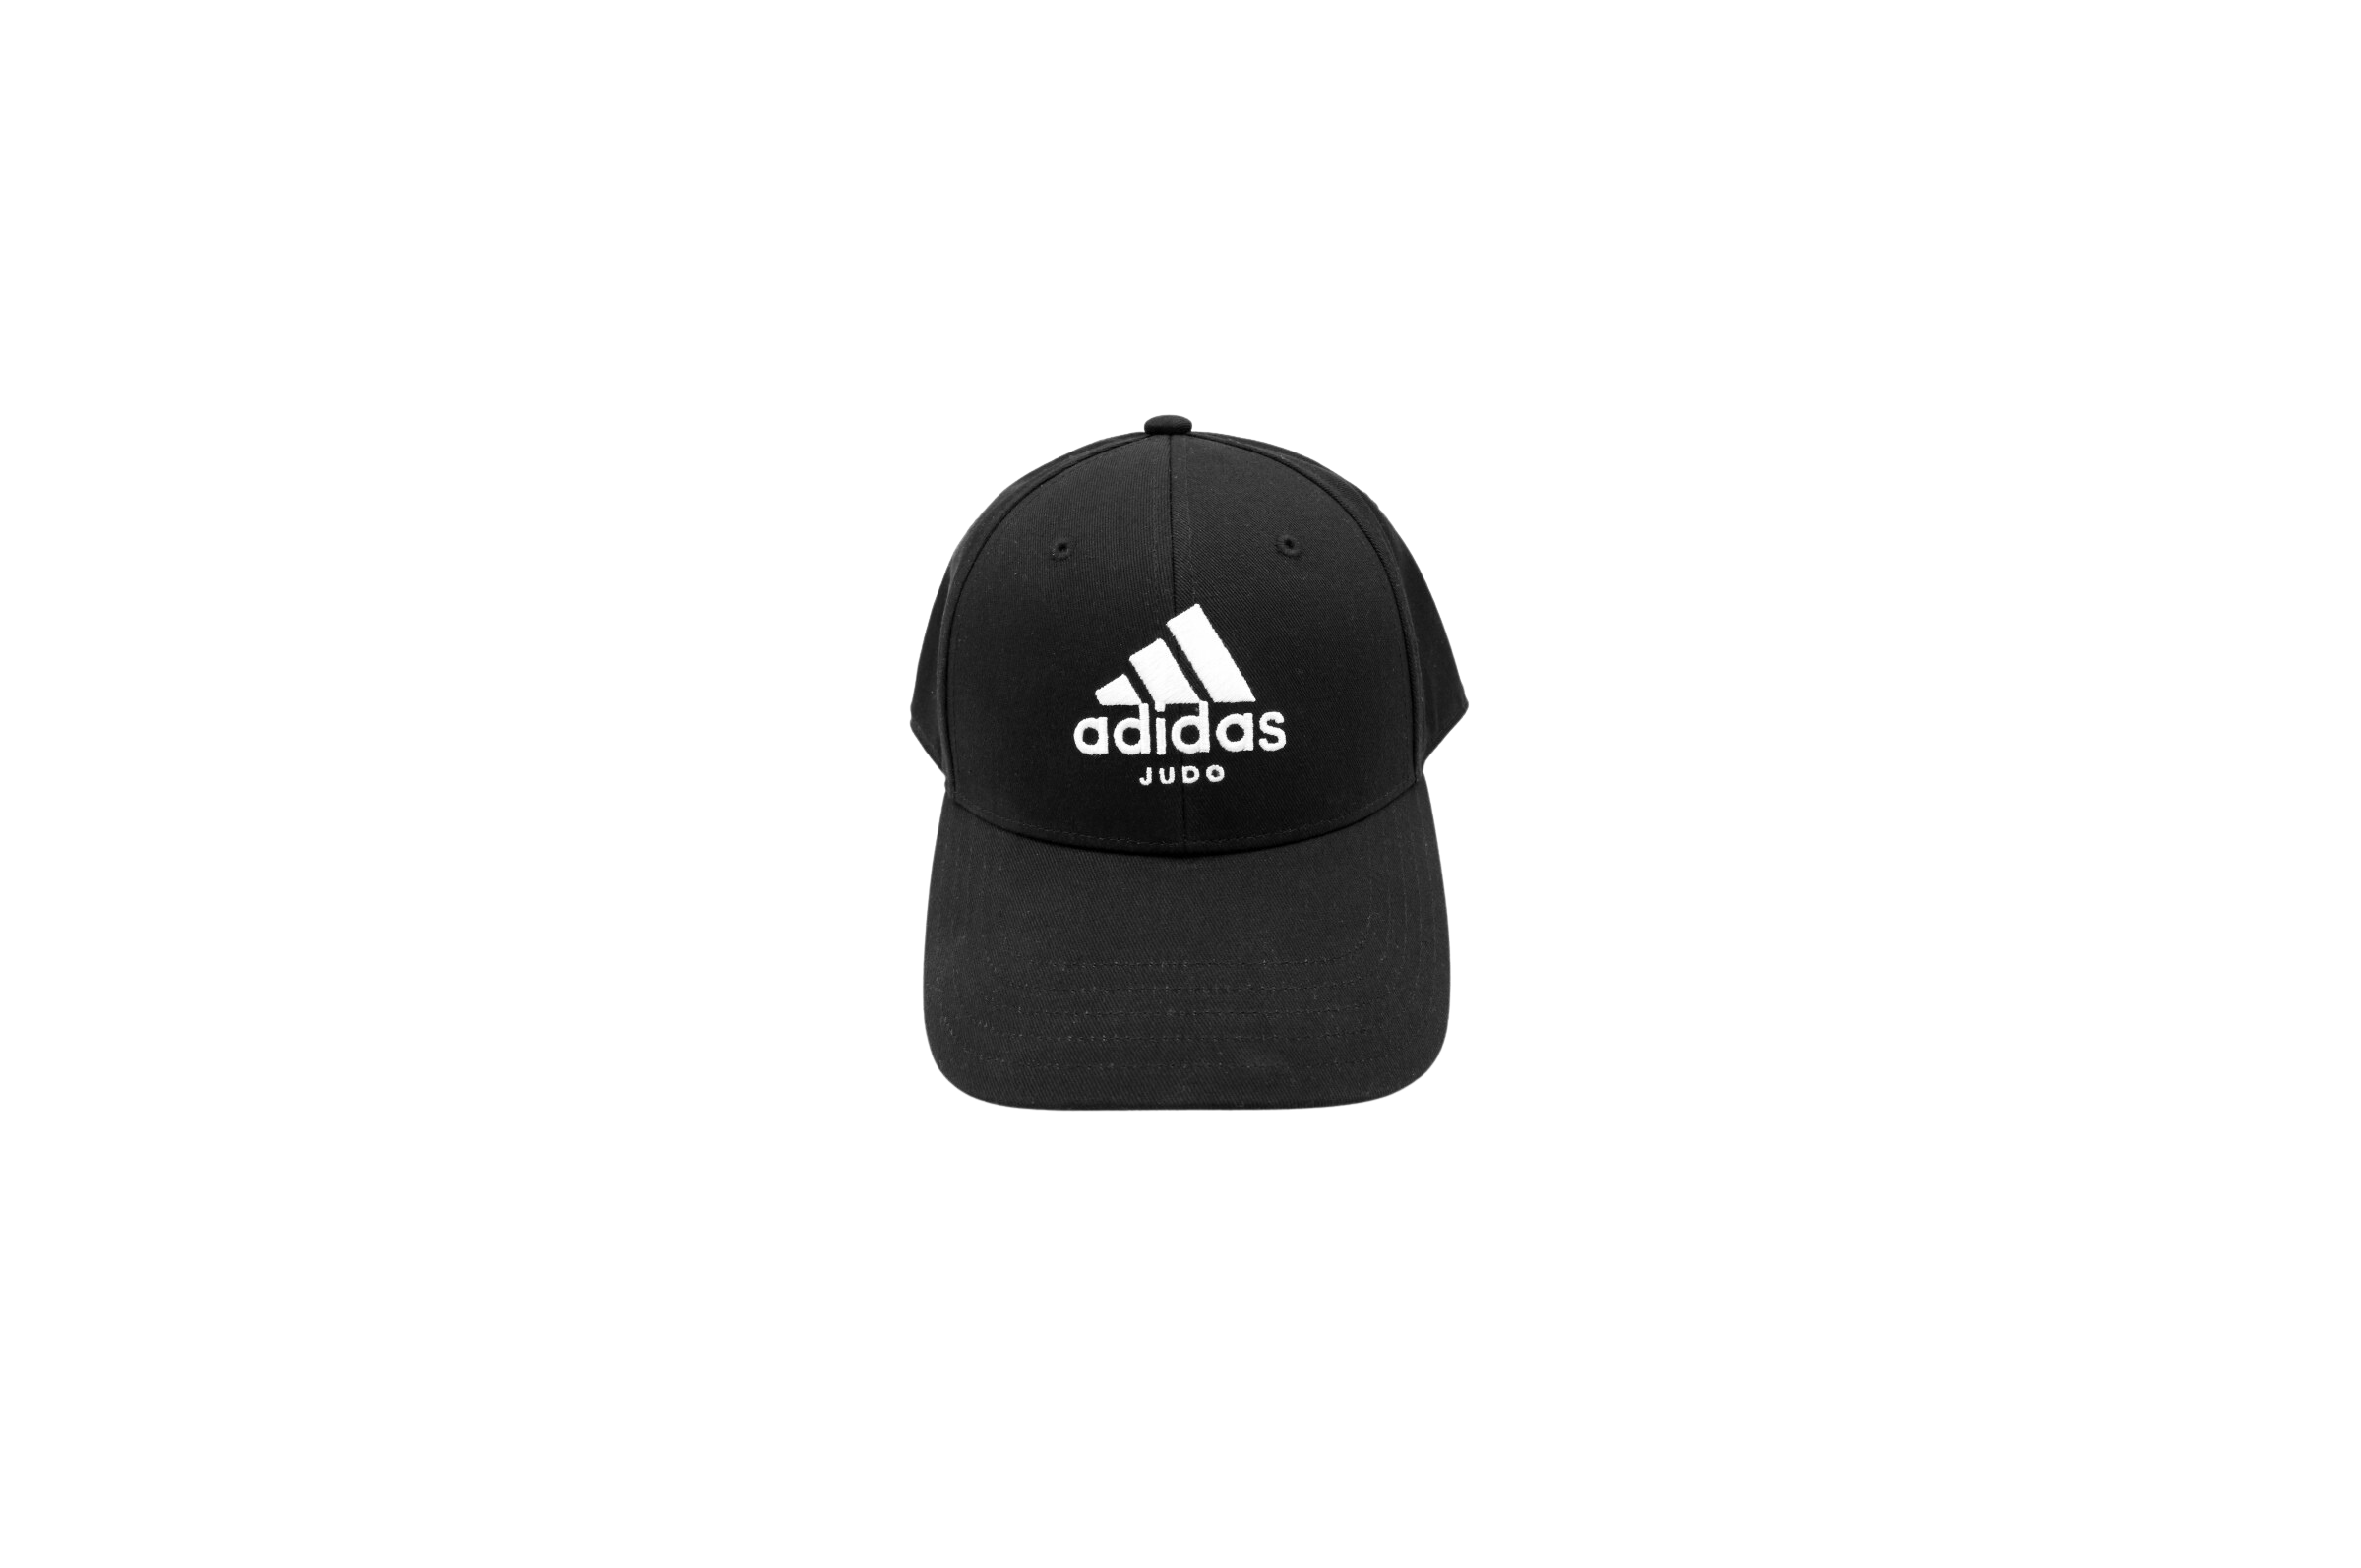 Casquette Adidas en coton noir avec logo et nom de la marque brodé